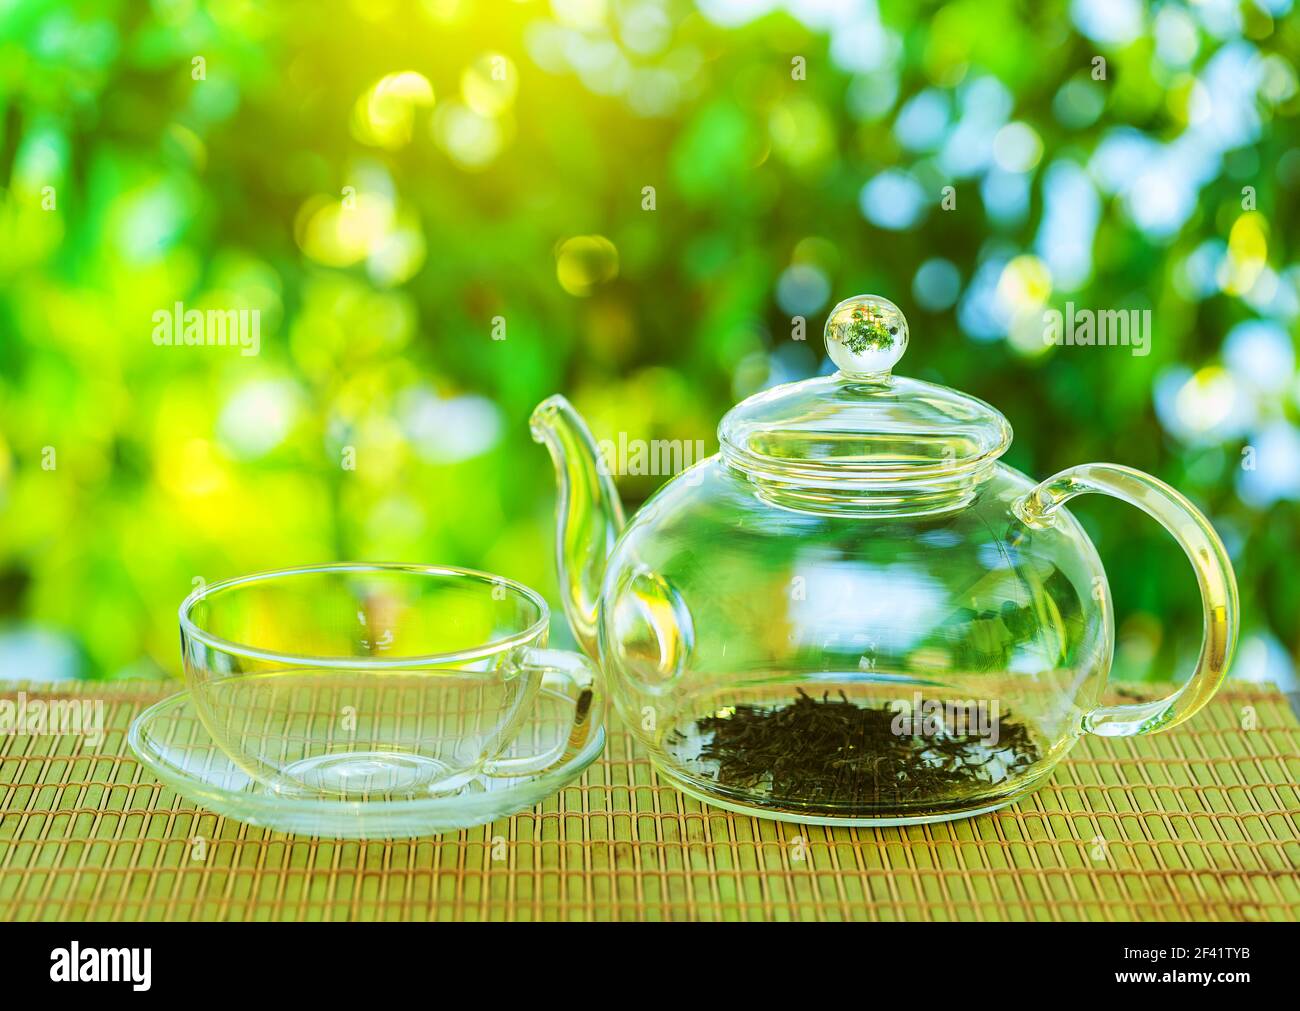 Cérémonie du thé. Une théière en verre vide avec des feuilles de thé se dresse sur une table en bois sur le fond d'une belle nature avec bokeh. Banque D'Images